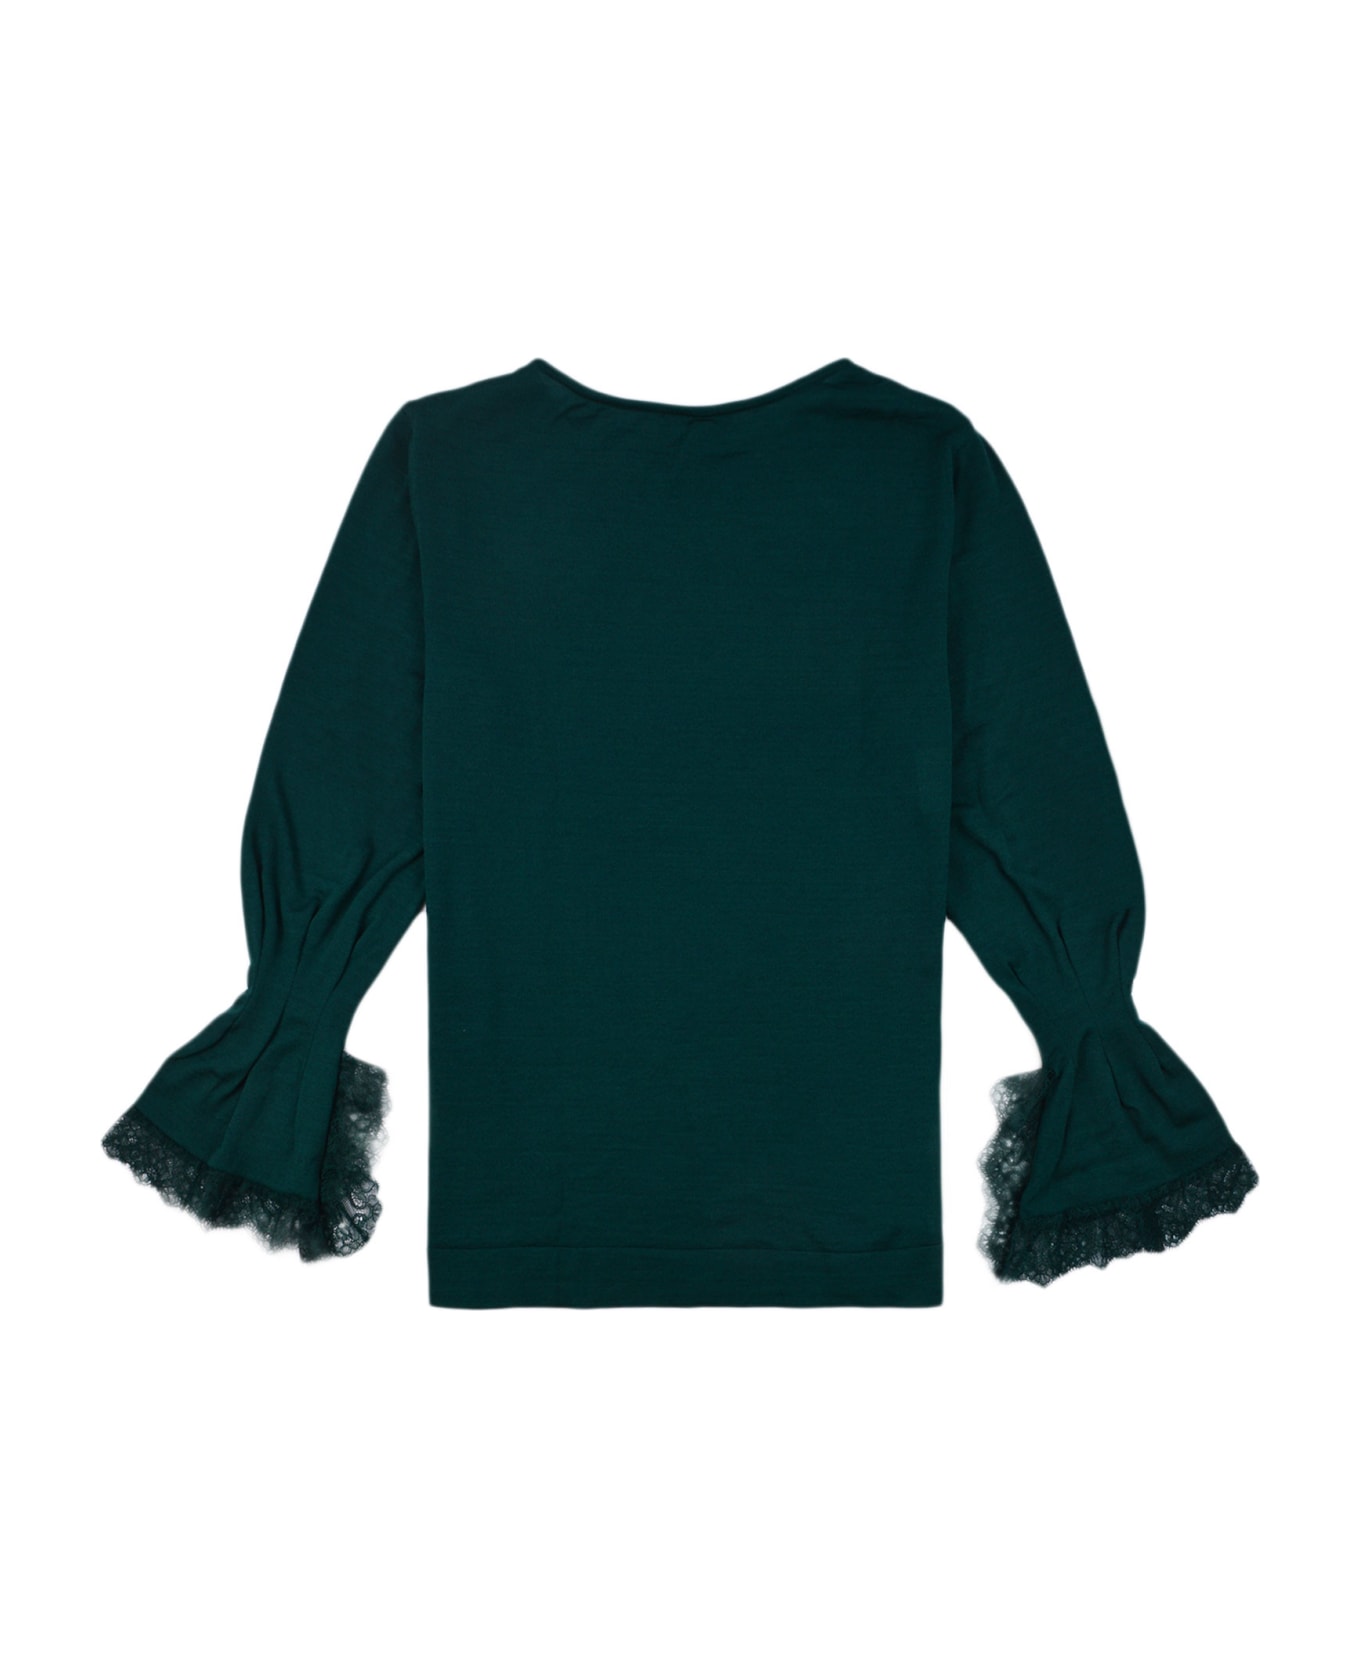 Alberta Ferretti Lace Cuffs Round Neck Plain Sweater - Verdone ニットウェア